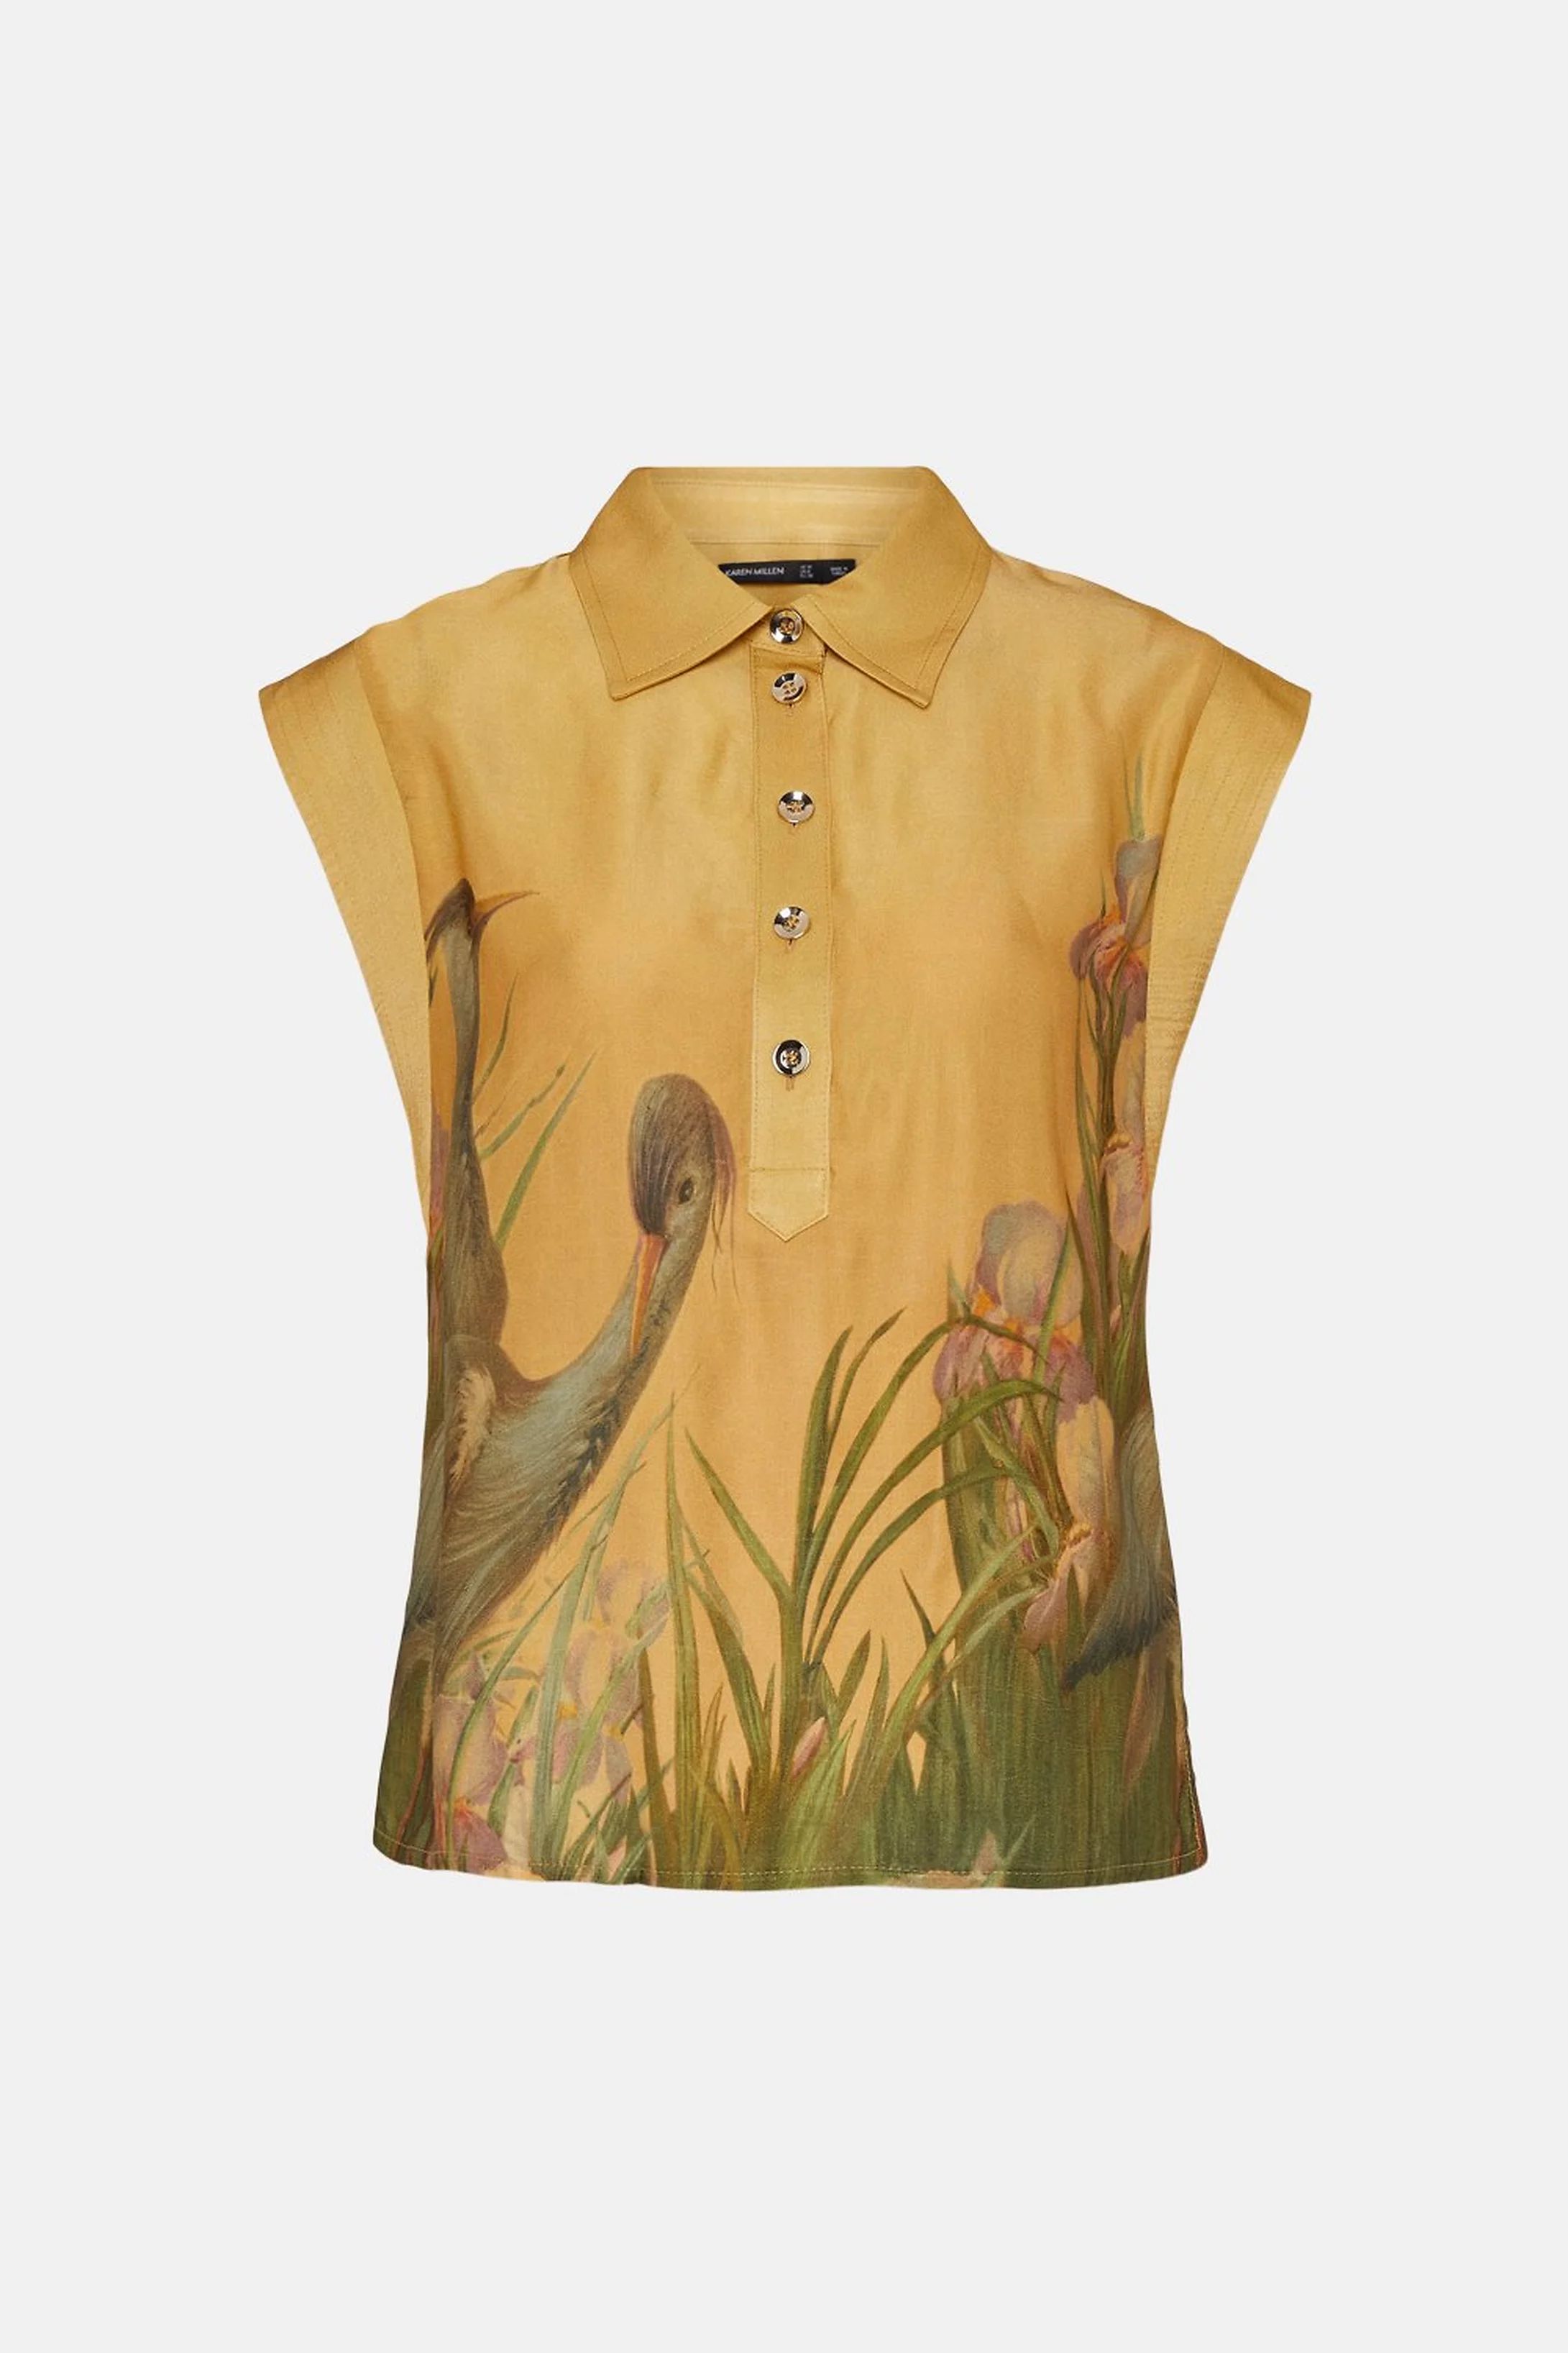 Heron Print SatinTop stitch Detail Woven Shirt | Karen Millen UK & IE